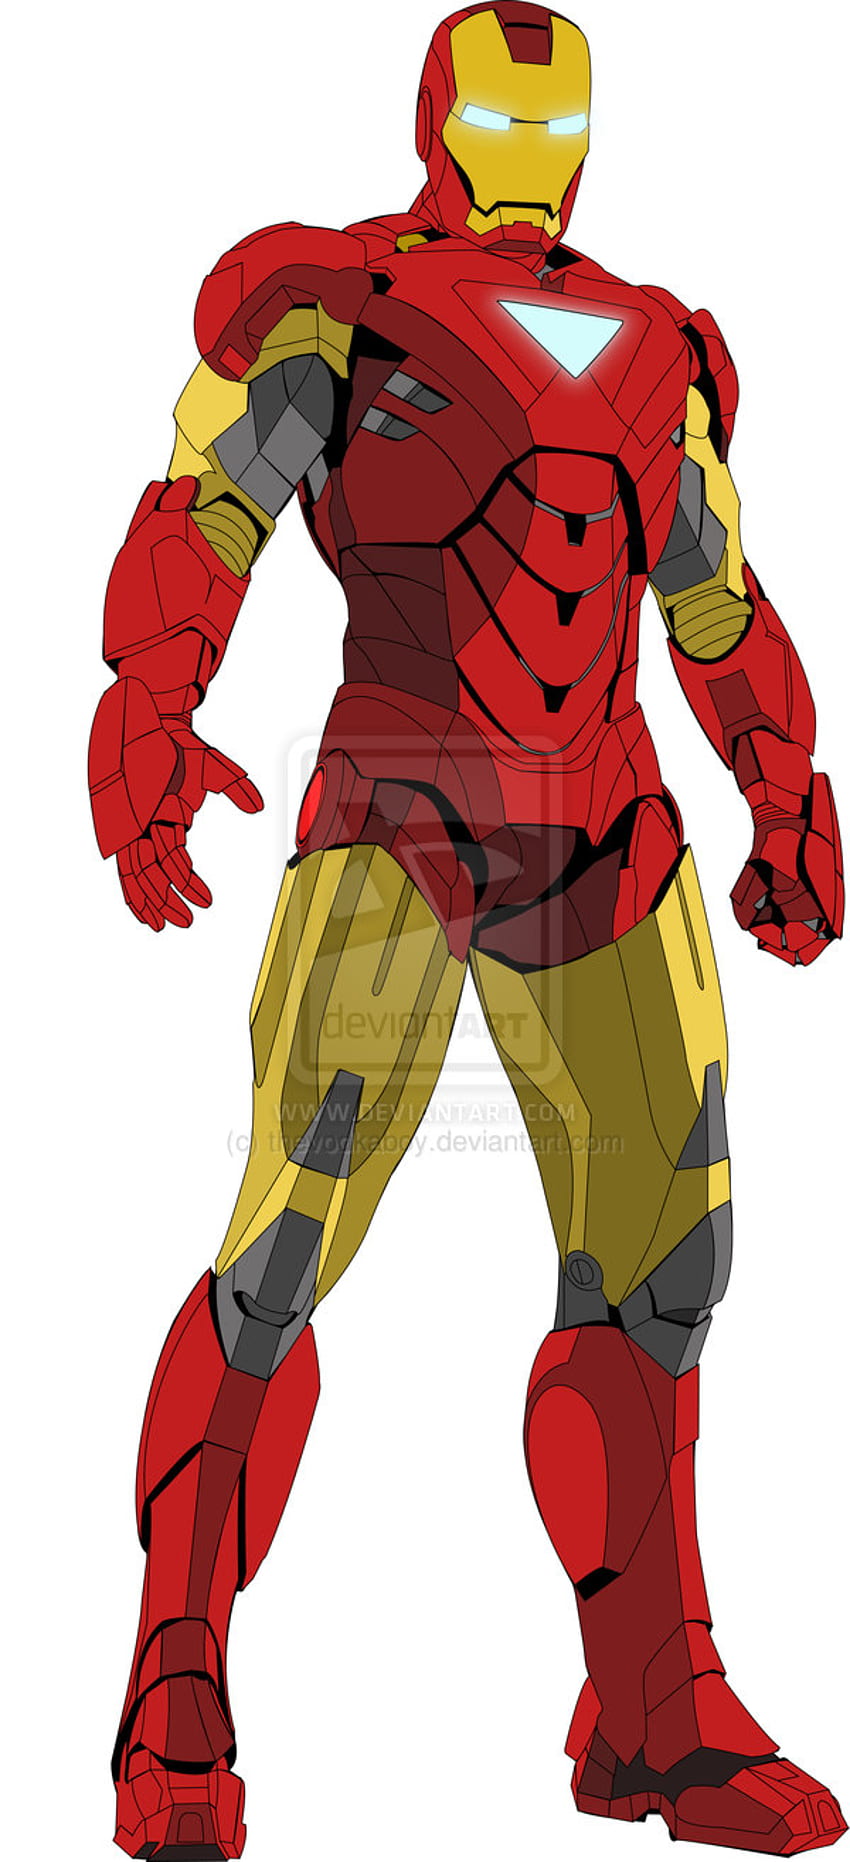 Tony Stark as Iron Man (Earth-346) - Marvel Comics